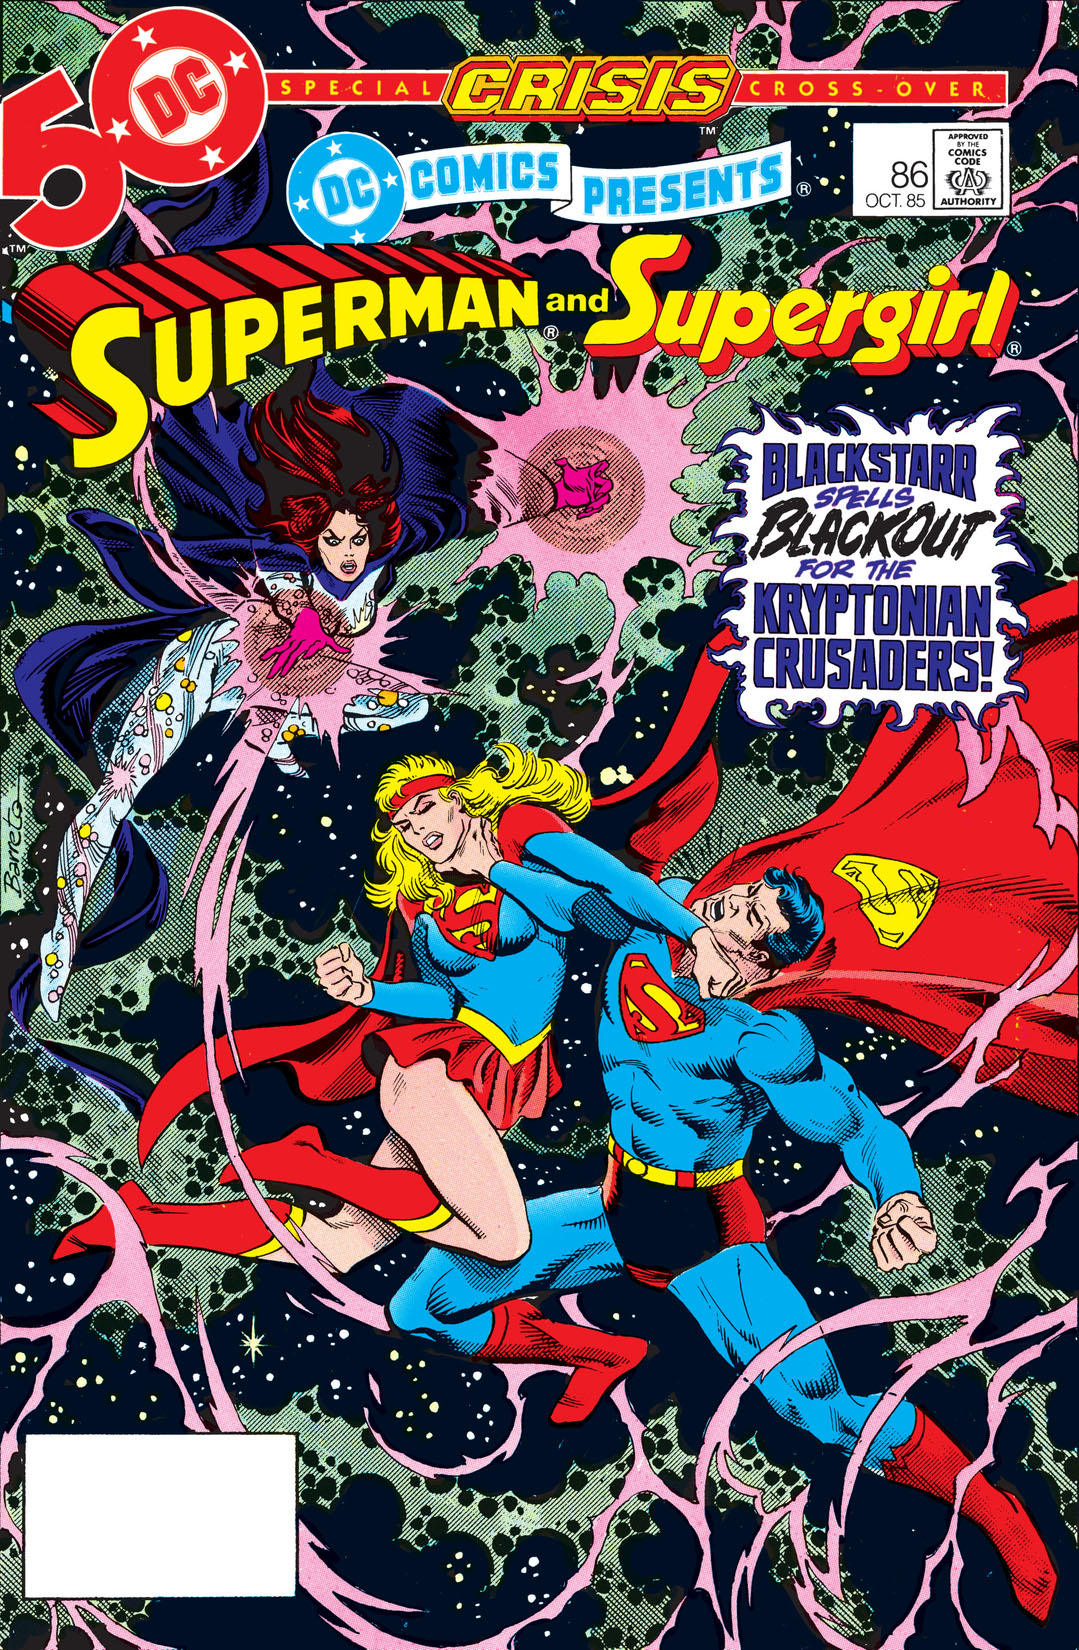 DC Comics Presents (1978-1986) #86 preview images